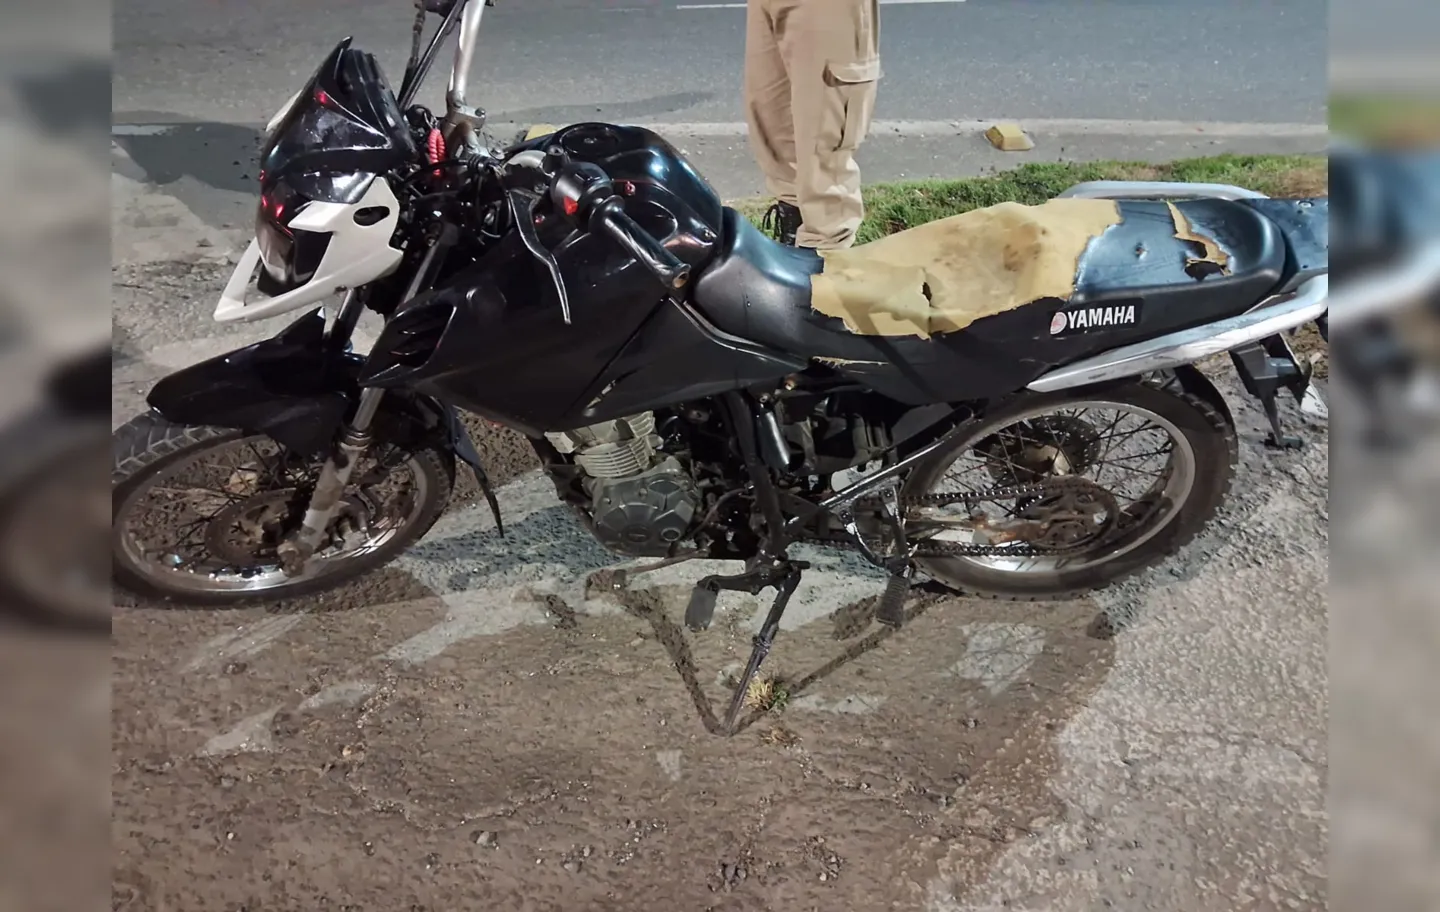 Os militares realizavam ações de policiamento quando avistaram uma motocicleta em alta velocidade